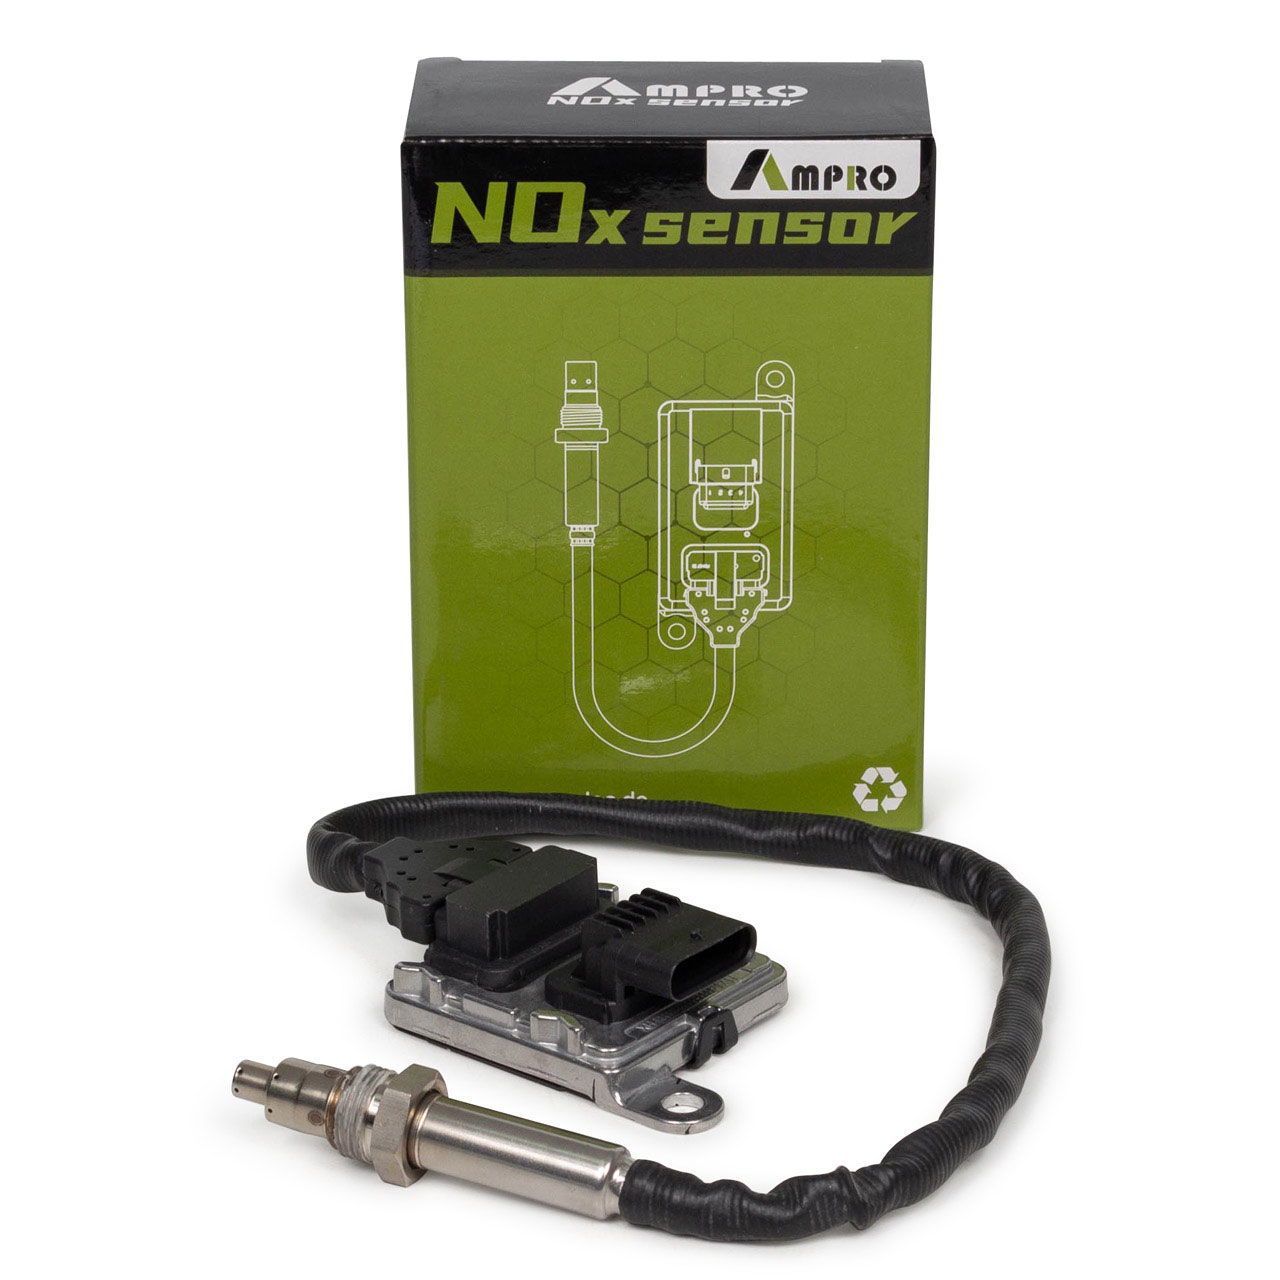  AMPRO NOx-Sensor 